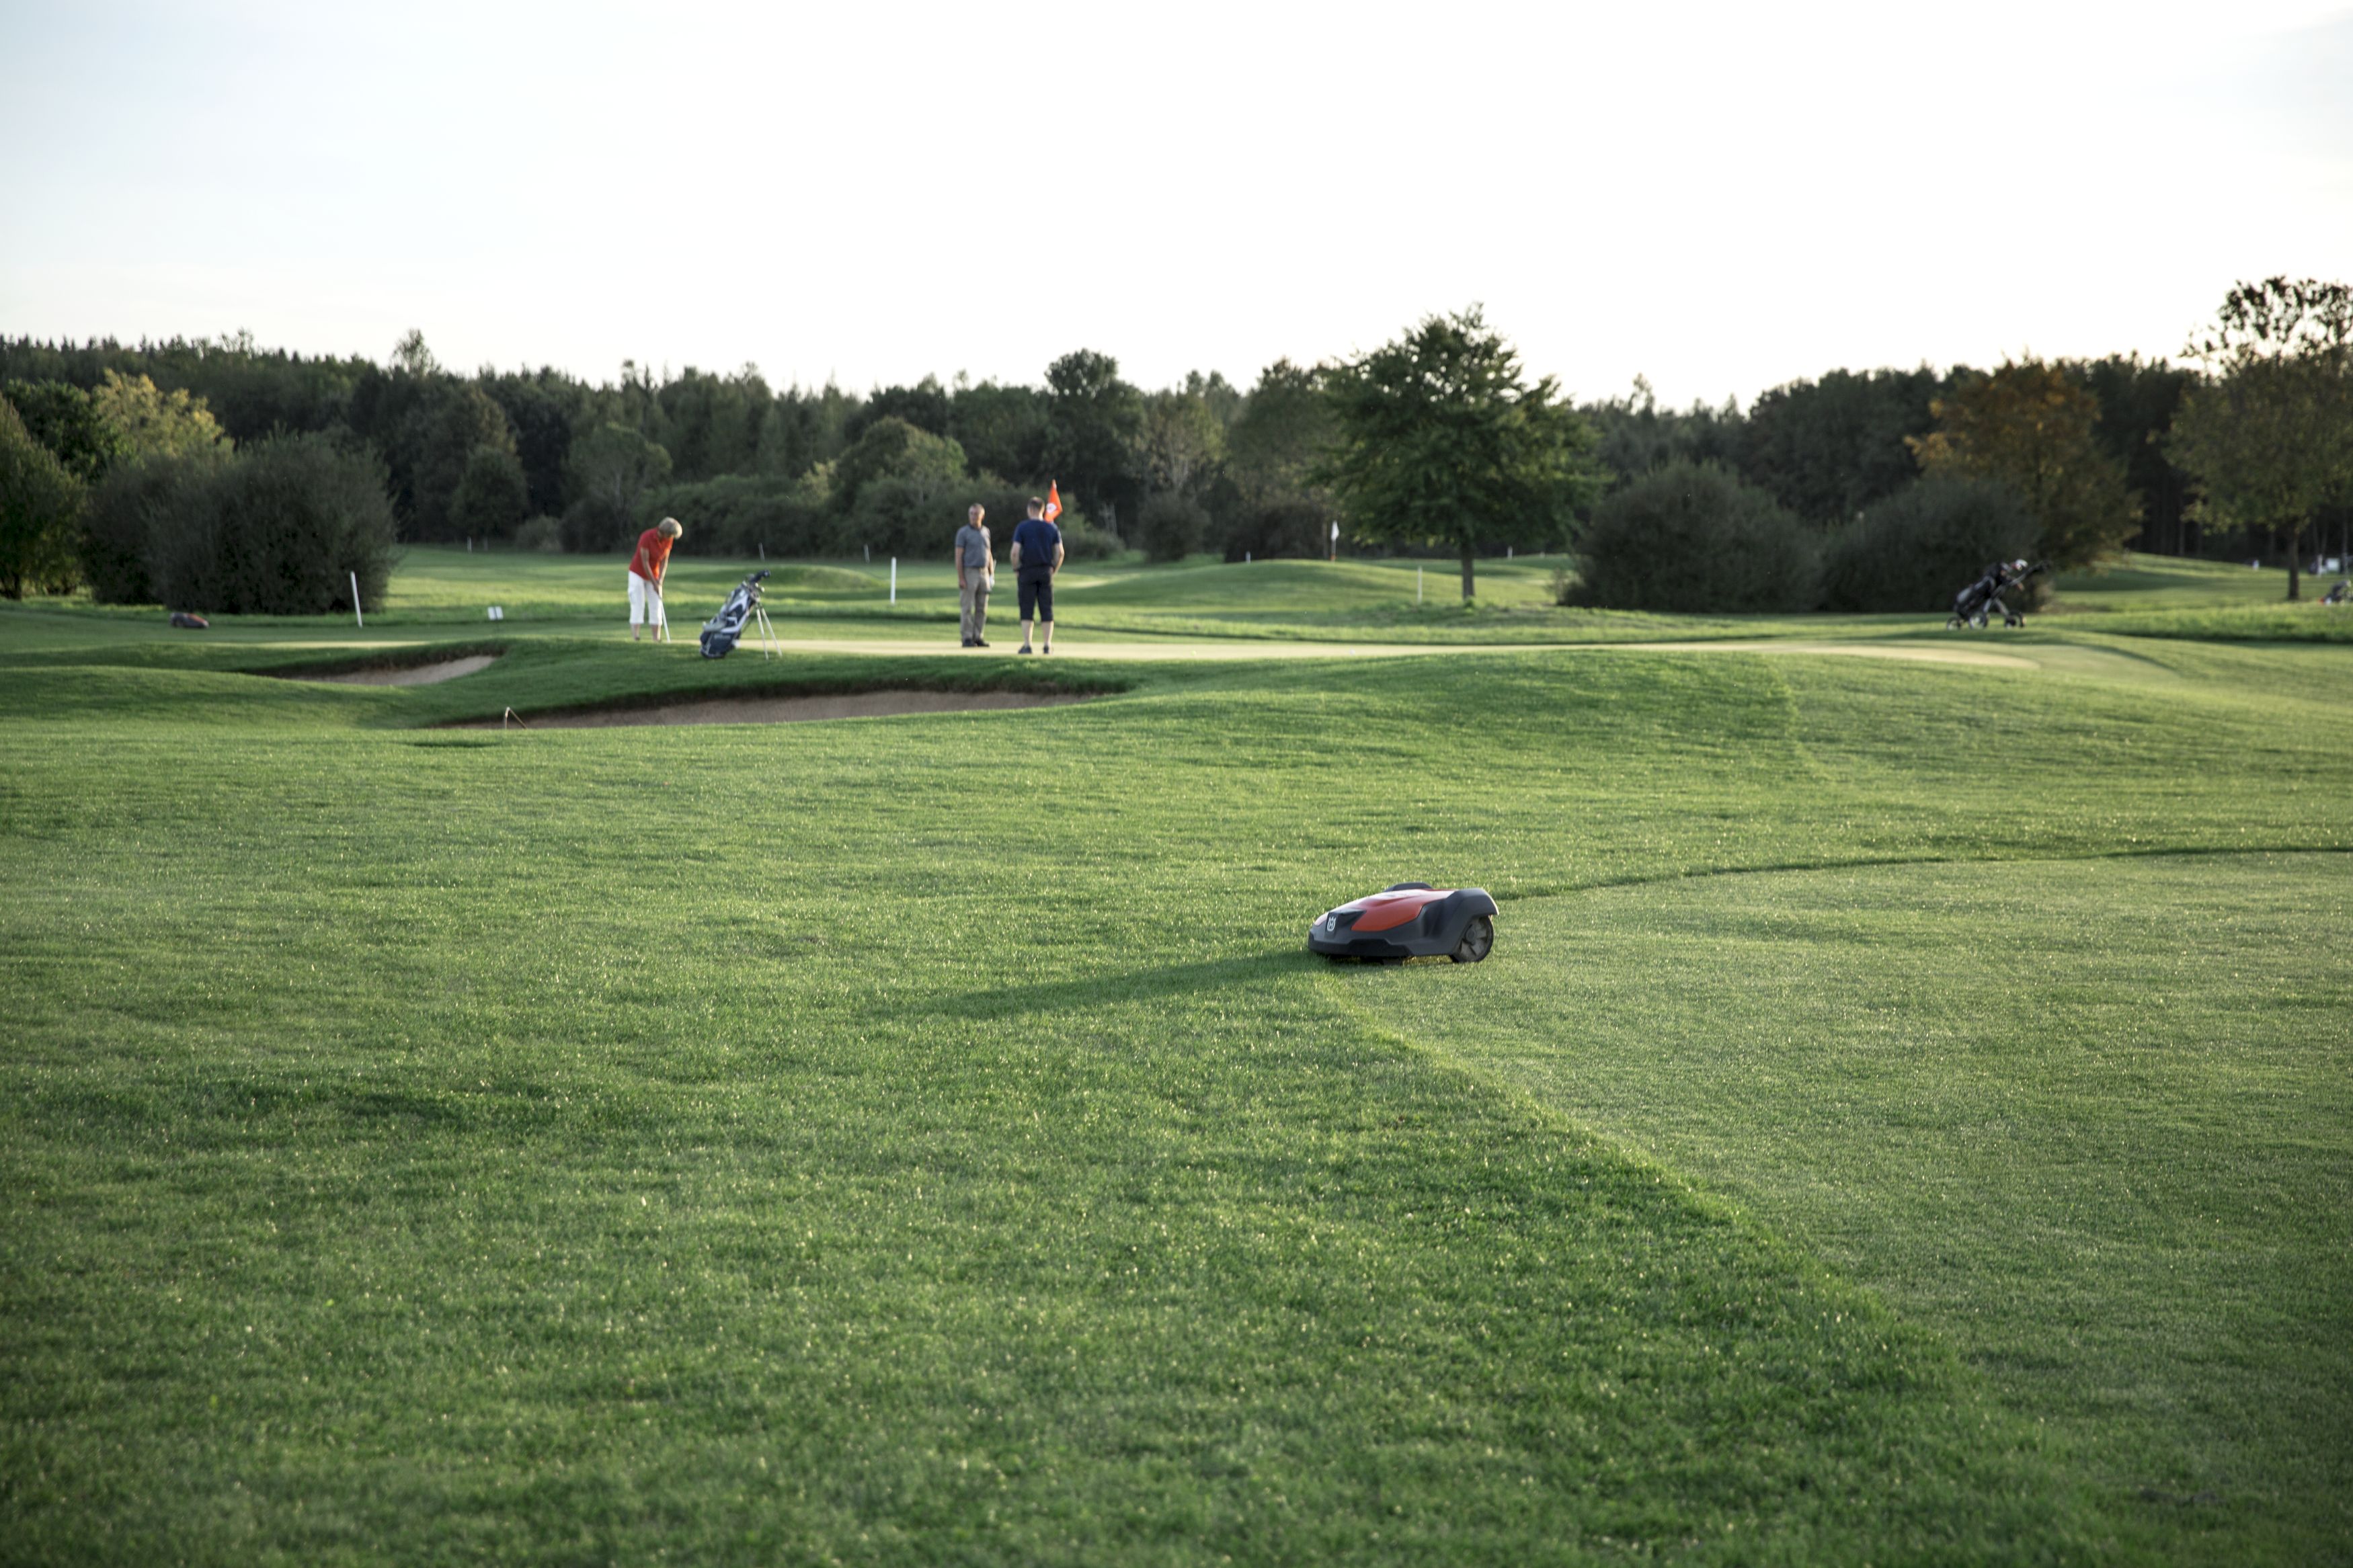 husqvarna zāles pļāvēja robots uz golfa laukuma